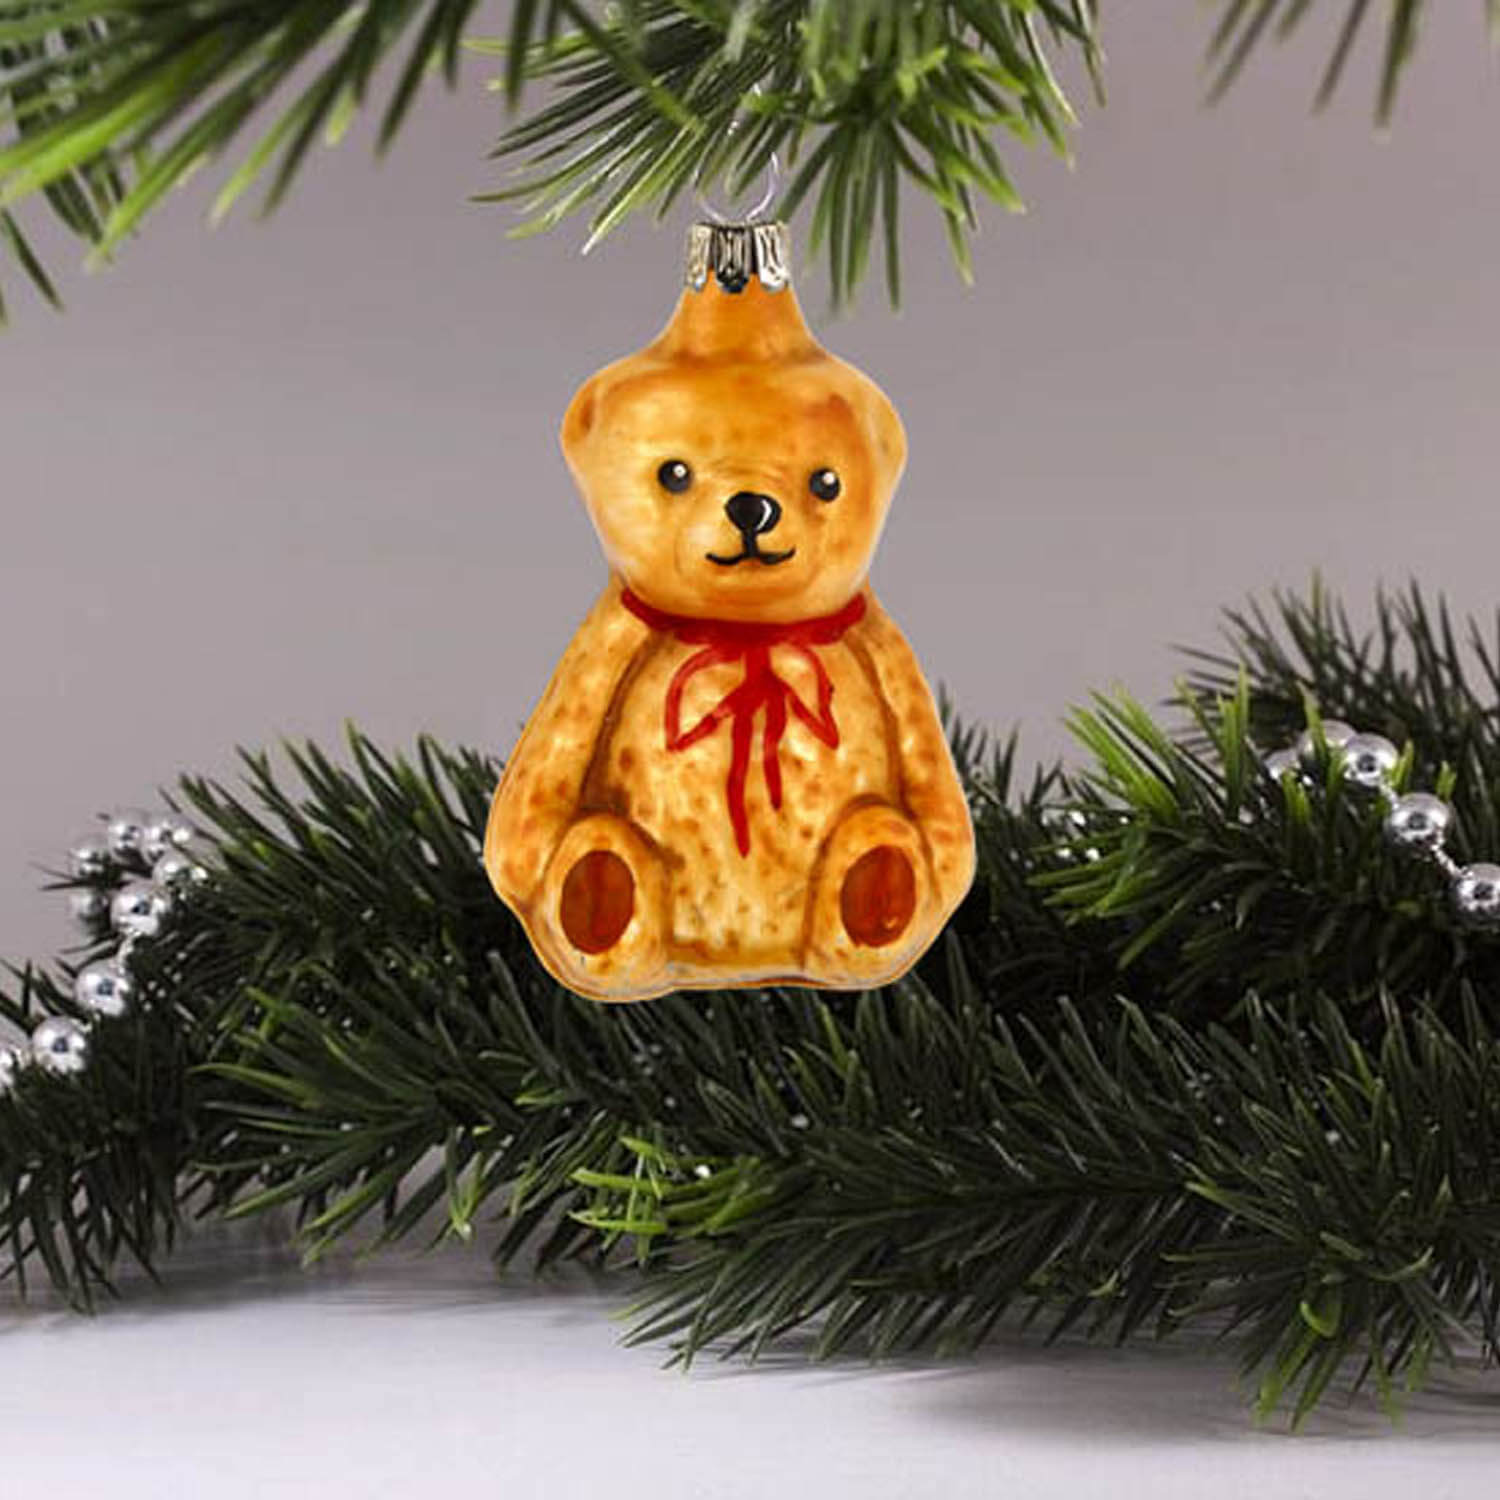 MAROLIN® - Glass ornament "Little Teddy bear sitting"